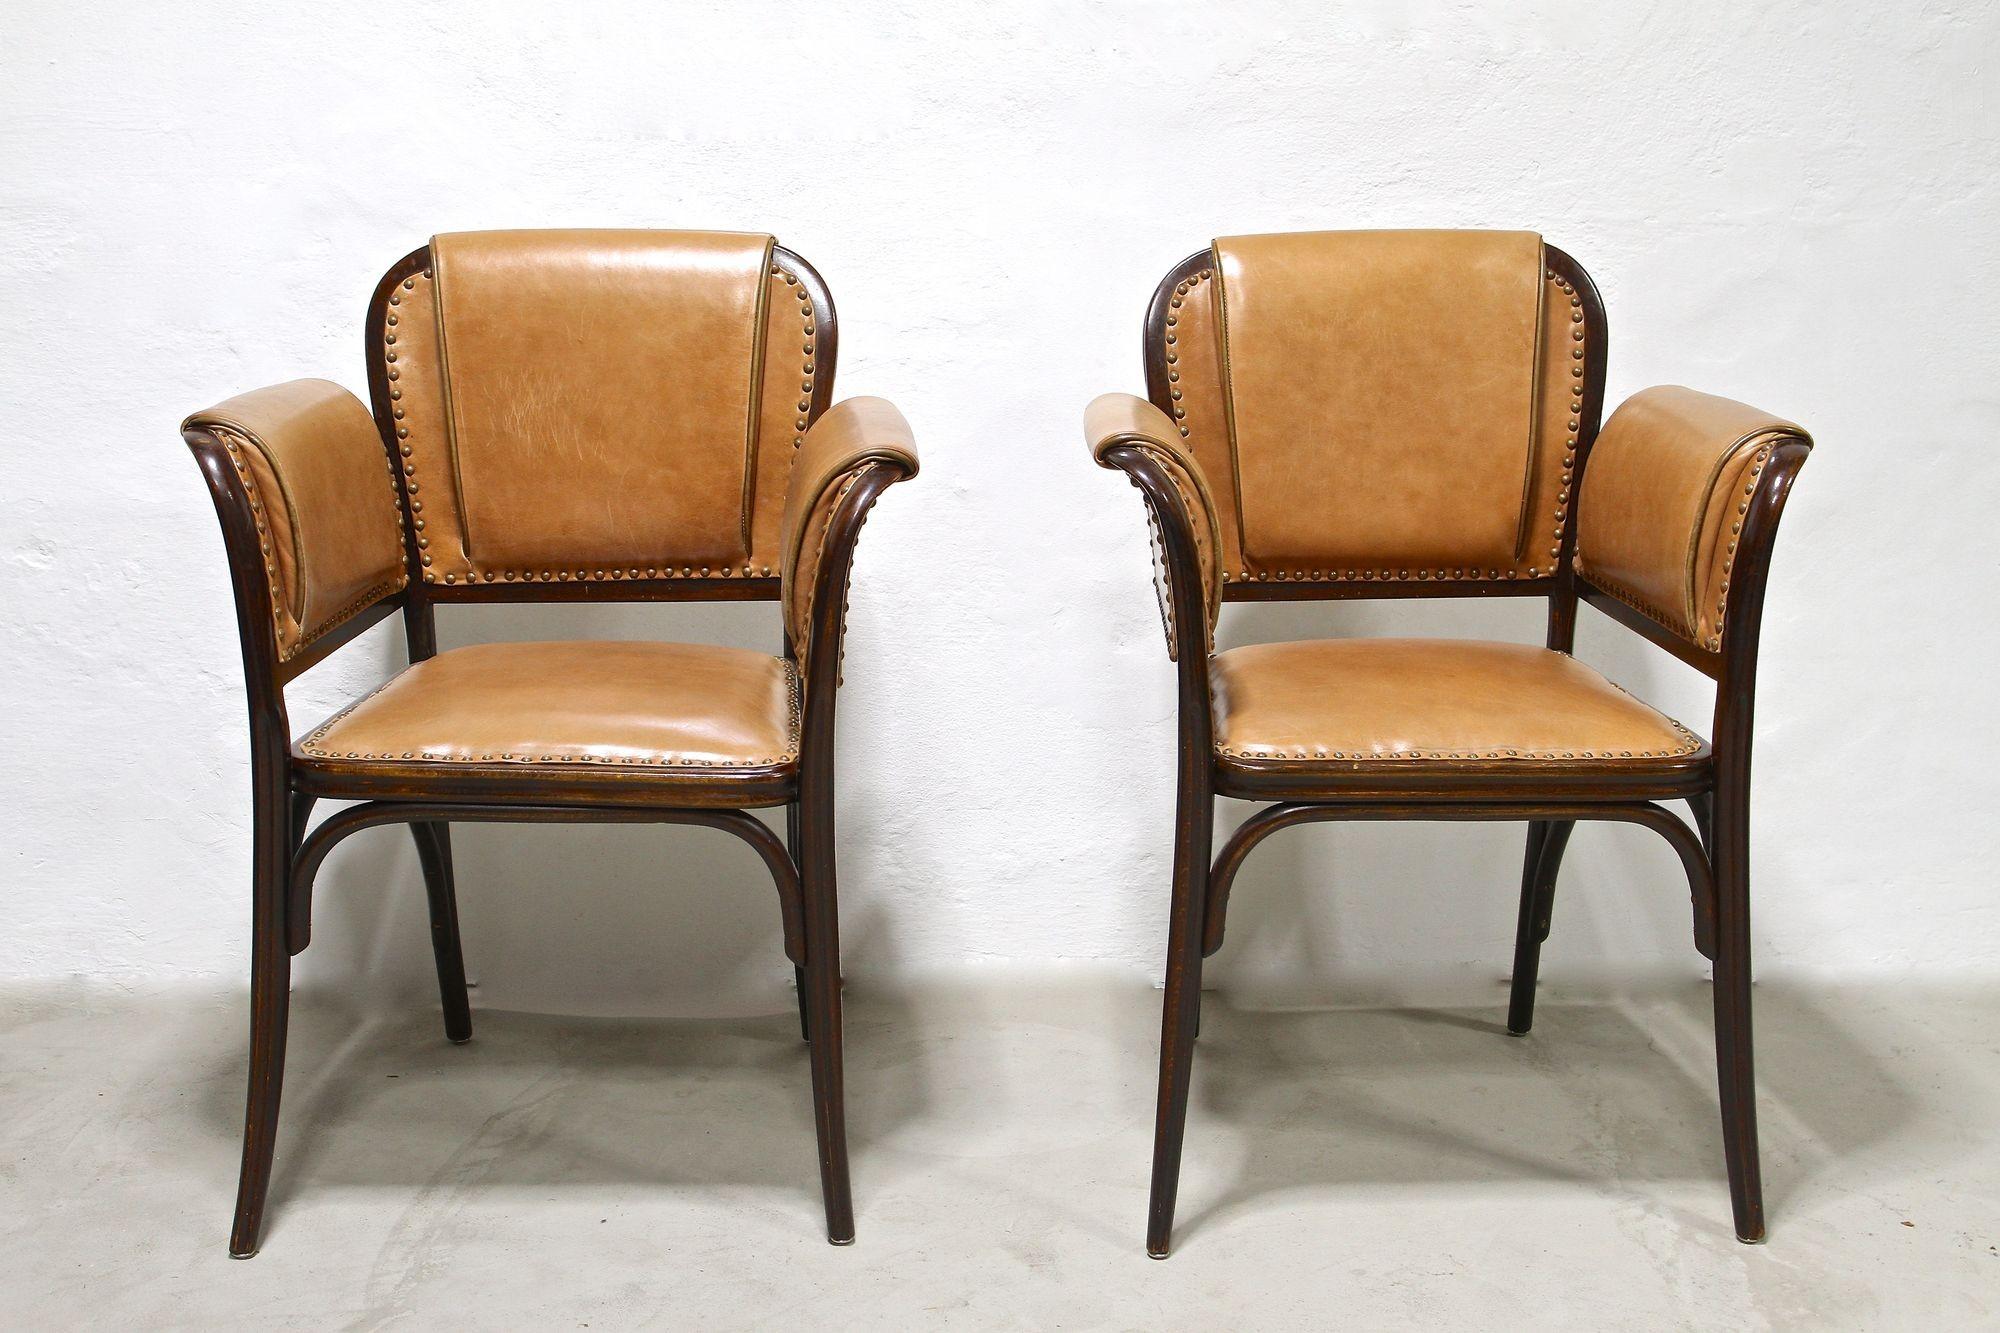 Absolut seltenes Paar Jugendstil-Bugholzsessel aus der Zeit um 1904. Diese aufwändig gefertigten Sessel aus dem frühen 20. Jahrhundert beeindrucken durch ihre erstaunliche Formgebung und wurden von der weltbekannten Firma THONET Wien hergestellt -